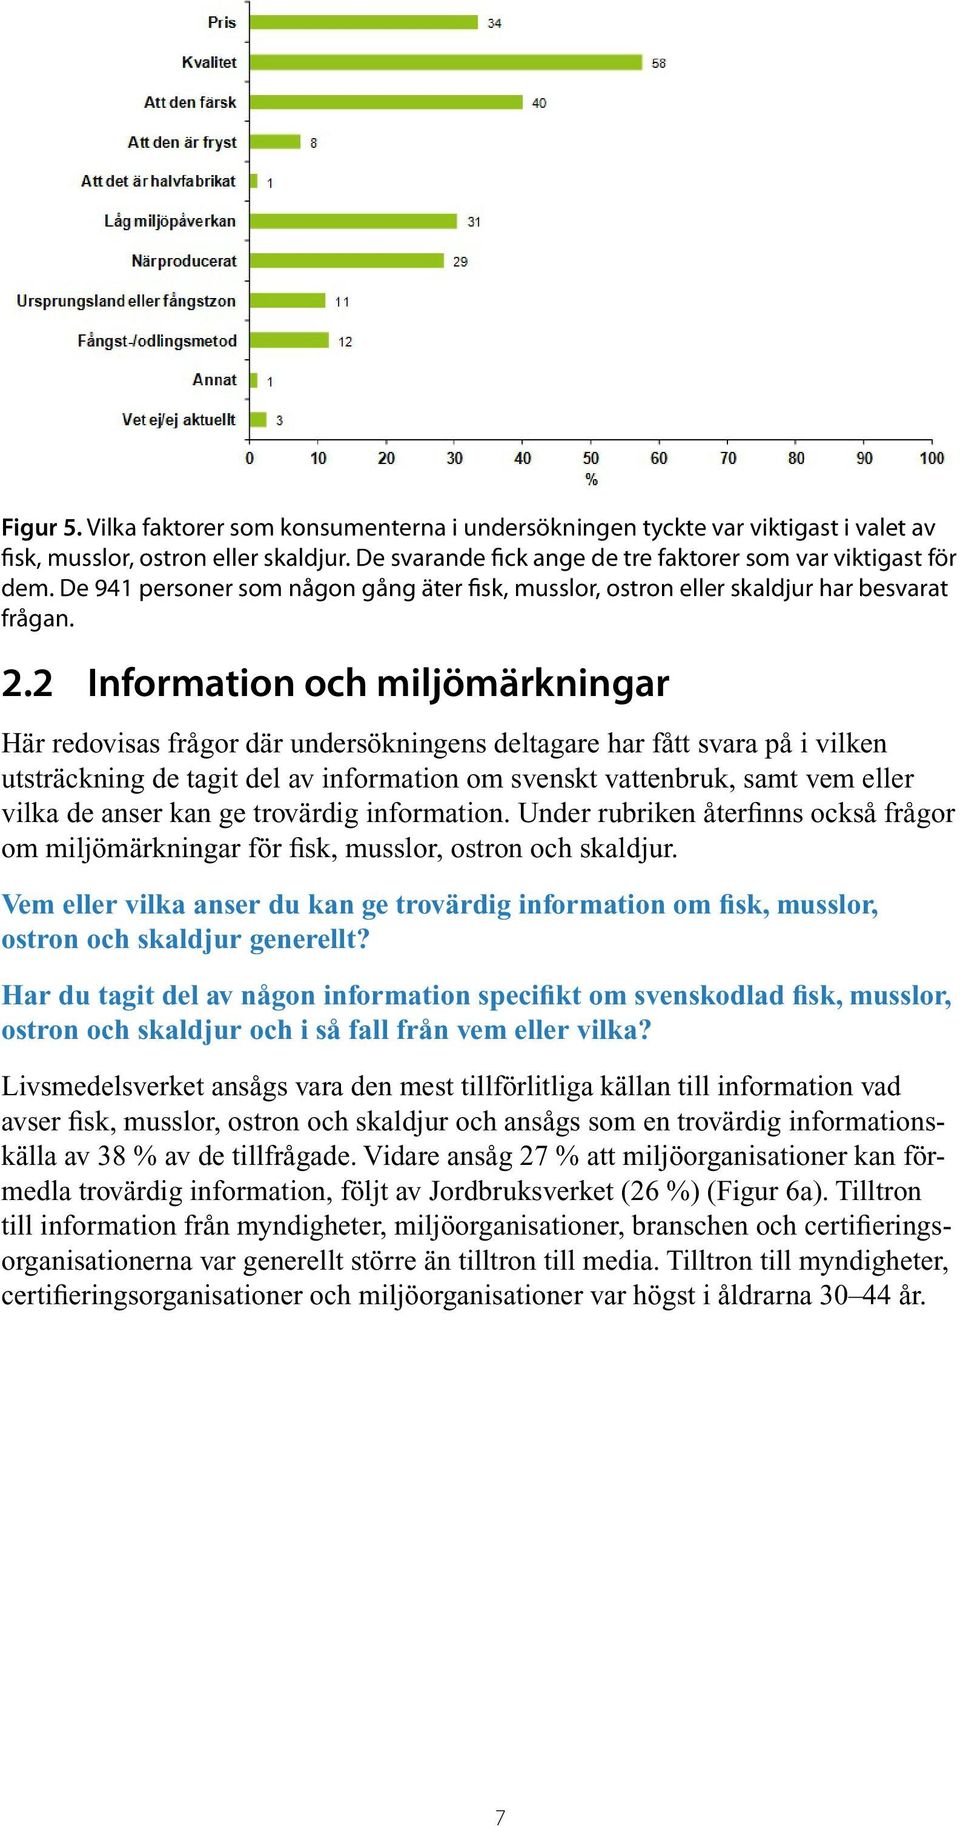 2 Information och miljömärkningar Här redovisas frågor där undersökningens deltagare har fått svara på i vilken utsträckning de tagit del av information om svenskt vattenbruk, samt vem eller vilka de